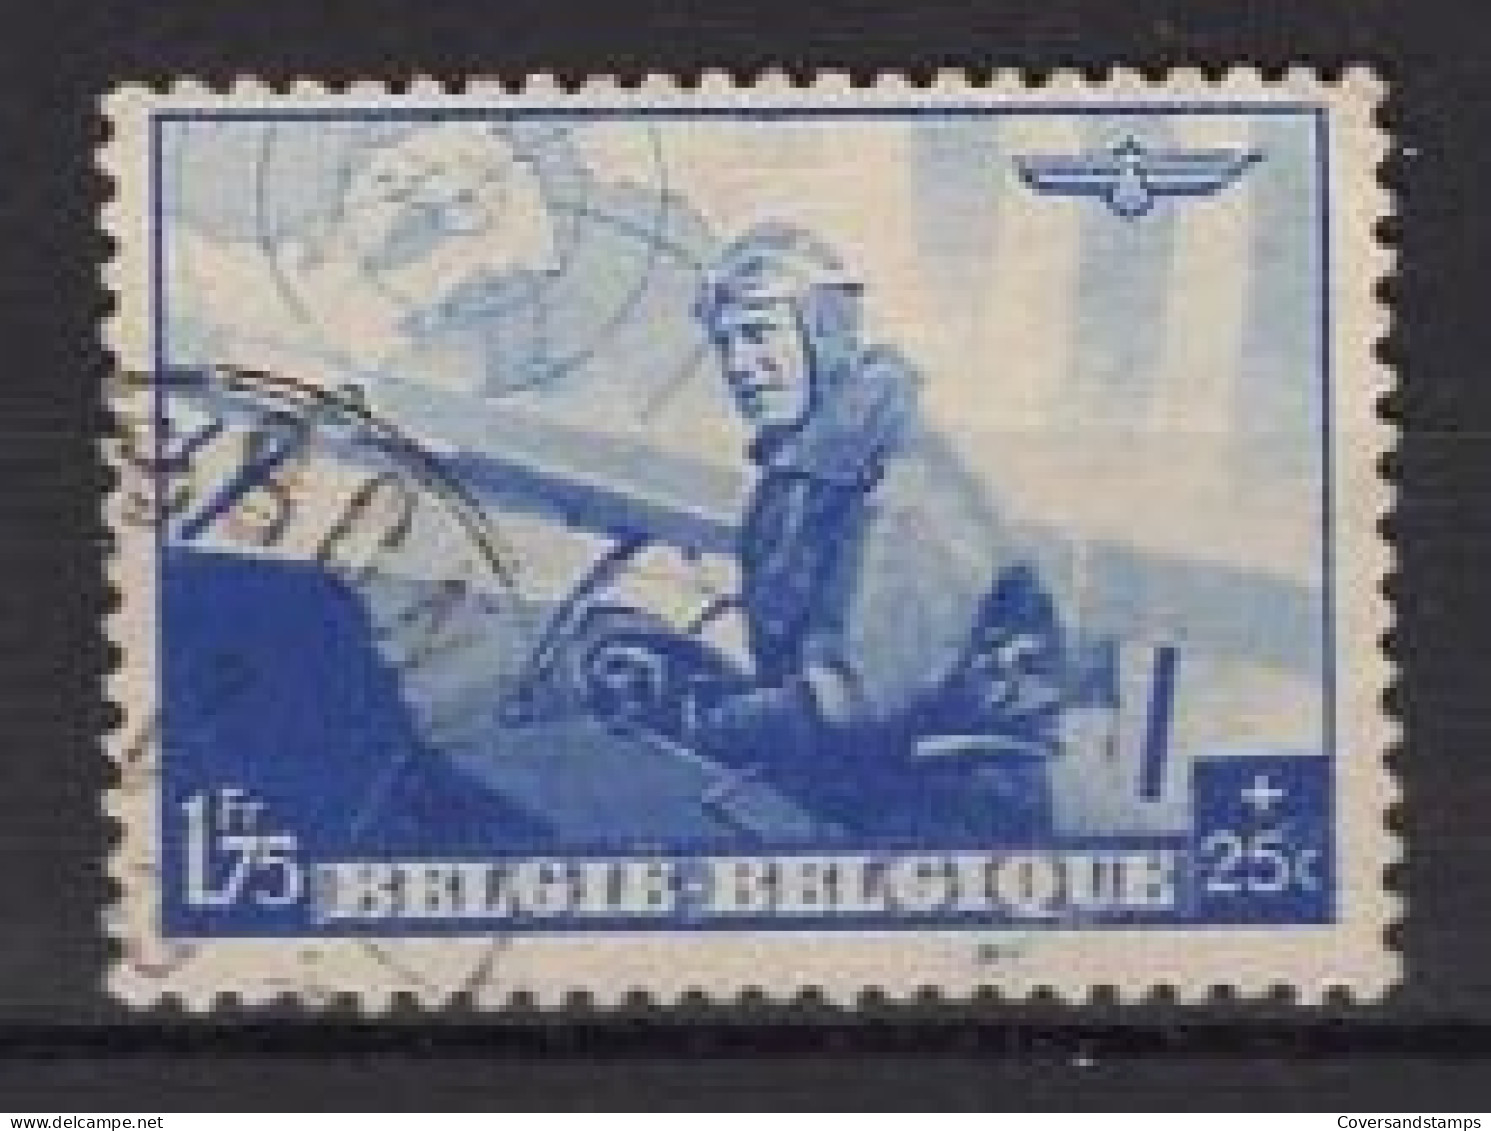  België - 469  Gestempeld / Oblitéré - Used Stamps